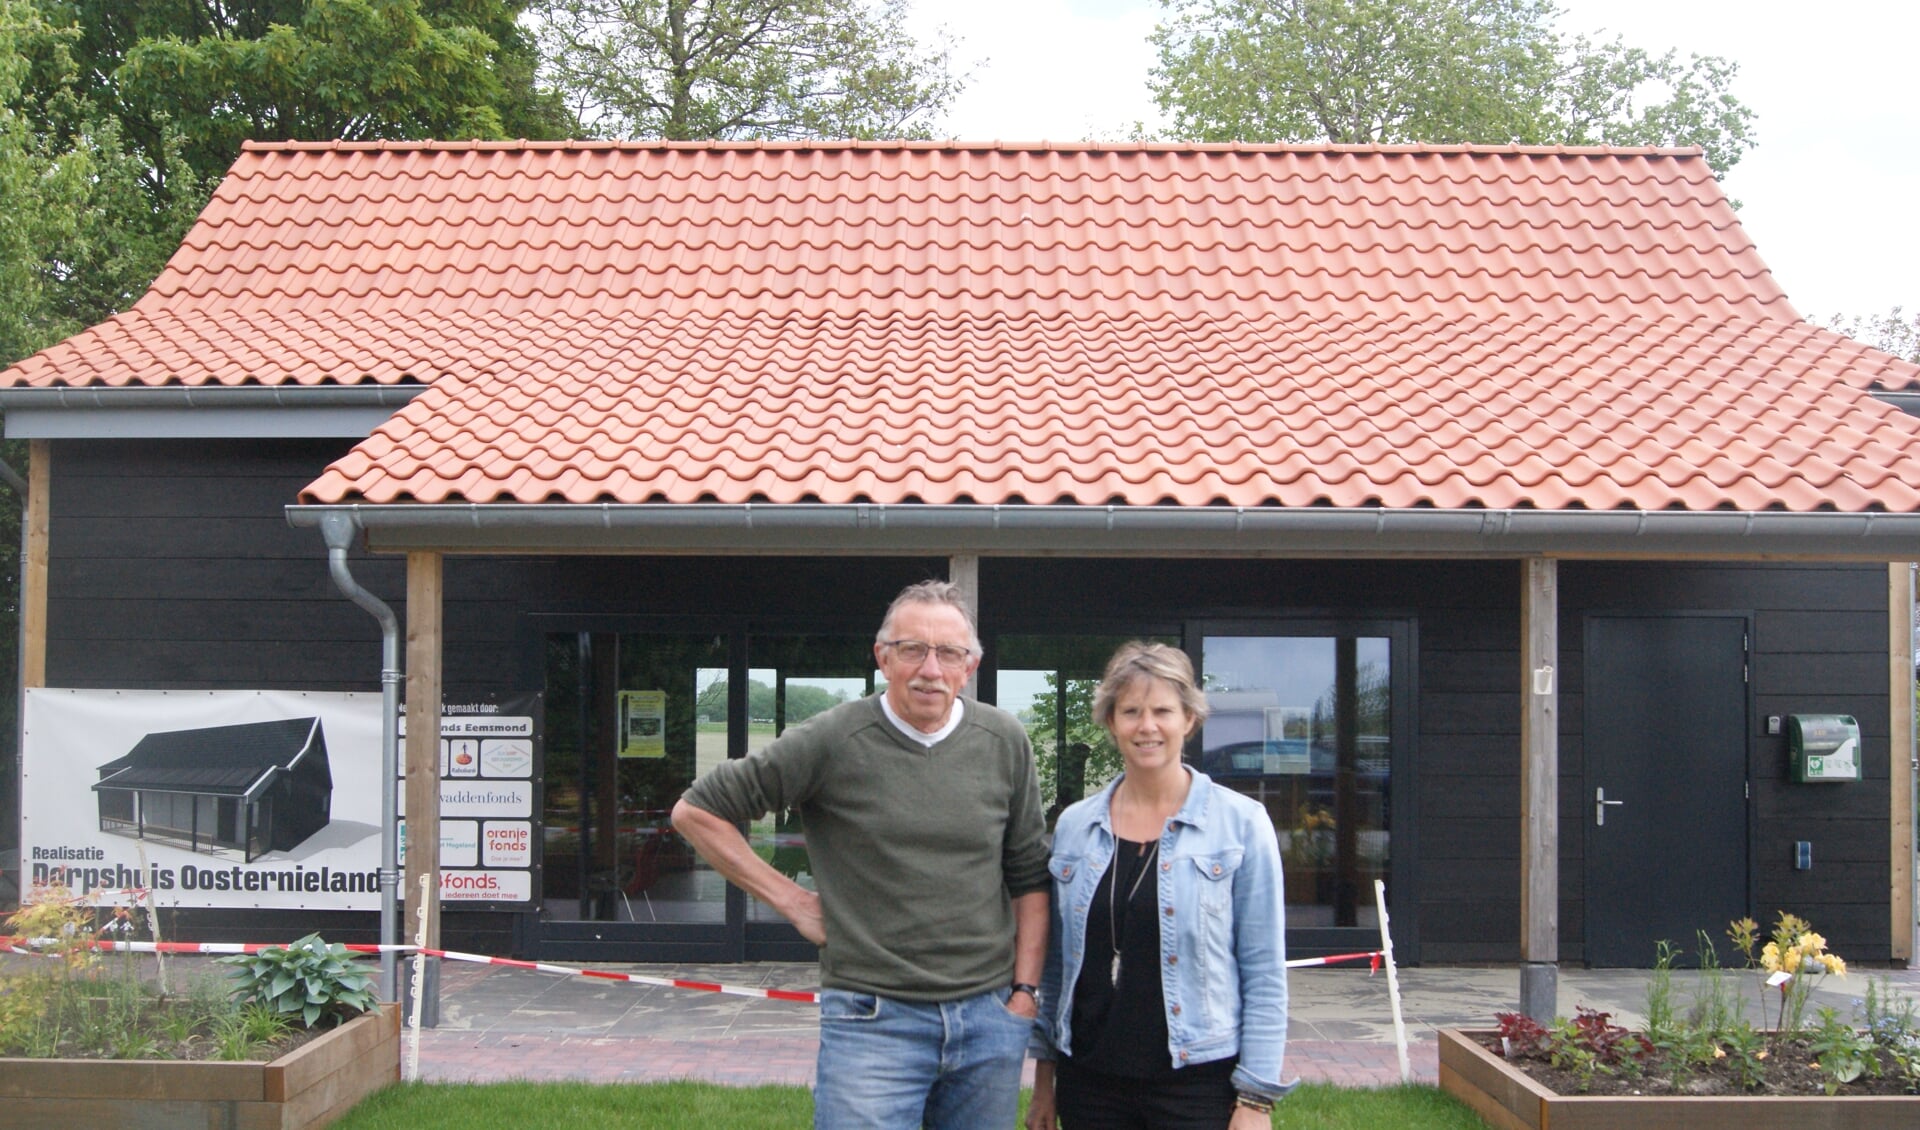 Eppe Scholtens en Carma van der Linden voor het nieuwe dorpshuis. 